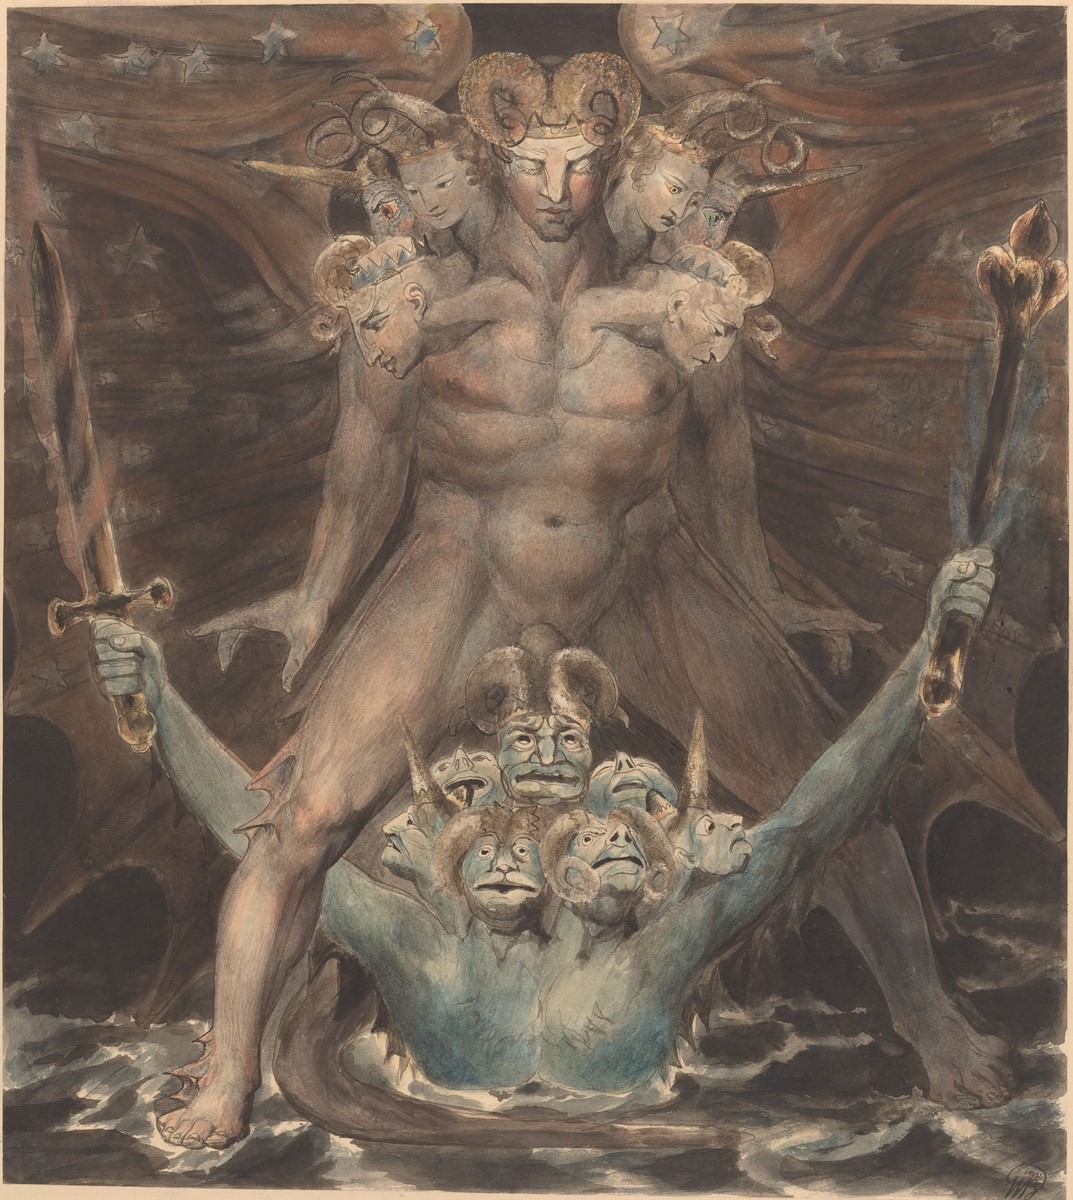 Η Μεγάλη Red Dragon και το Τέρας από τη θάλασσα, 1805. Ουίλλιαμ Μπλέηκ. Εθνική Γκαλερί τέχνης, Ουάσιγκτον. συλλογή Rosenwald.